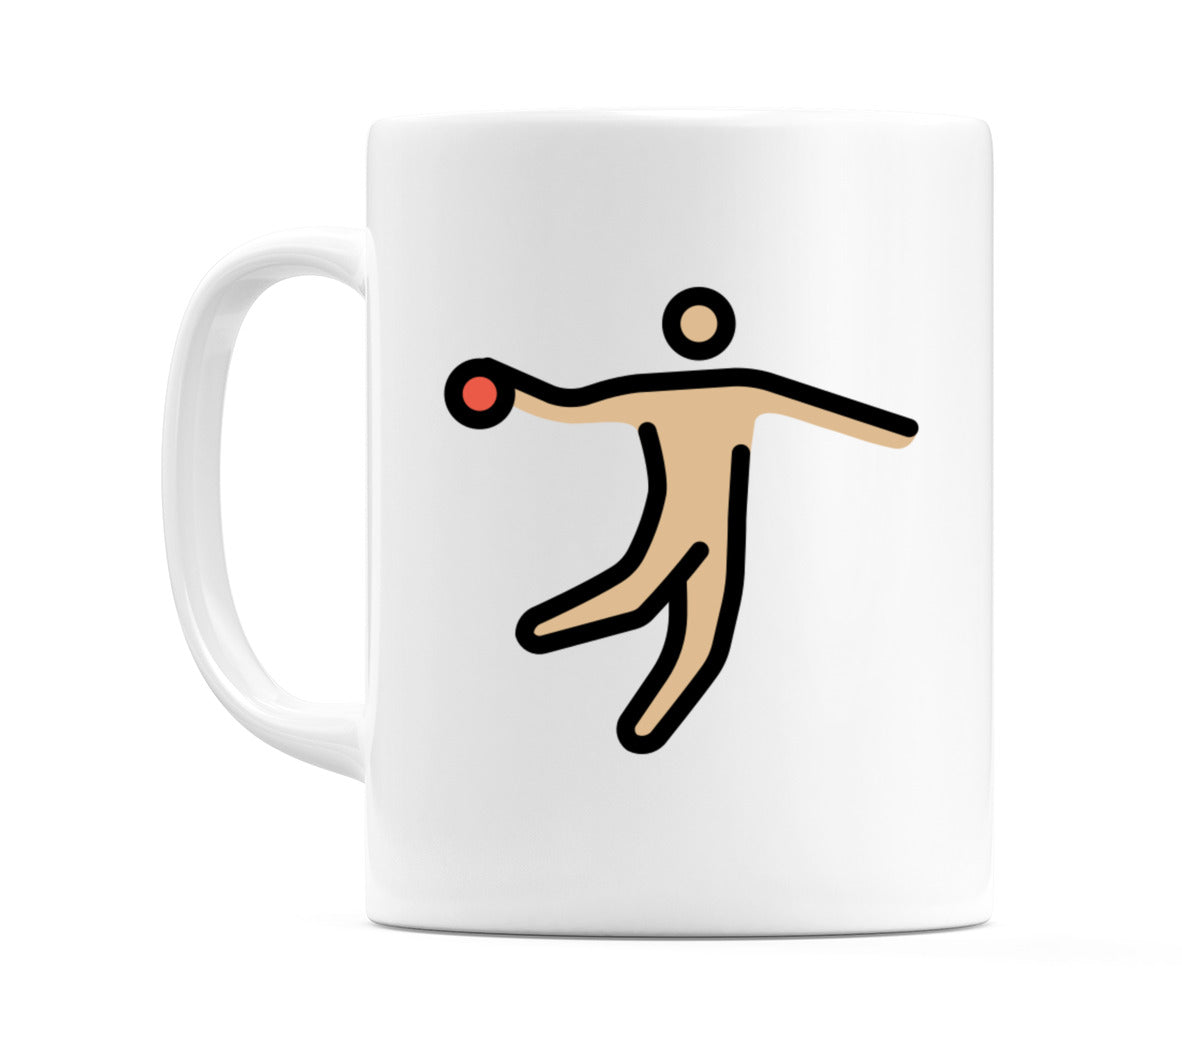 Male Playing Handball: Medium-Light Skin Tone Emoji Mug